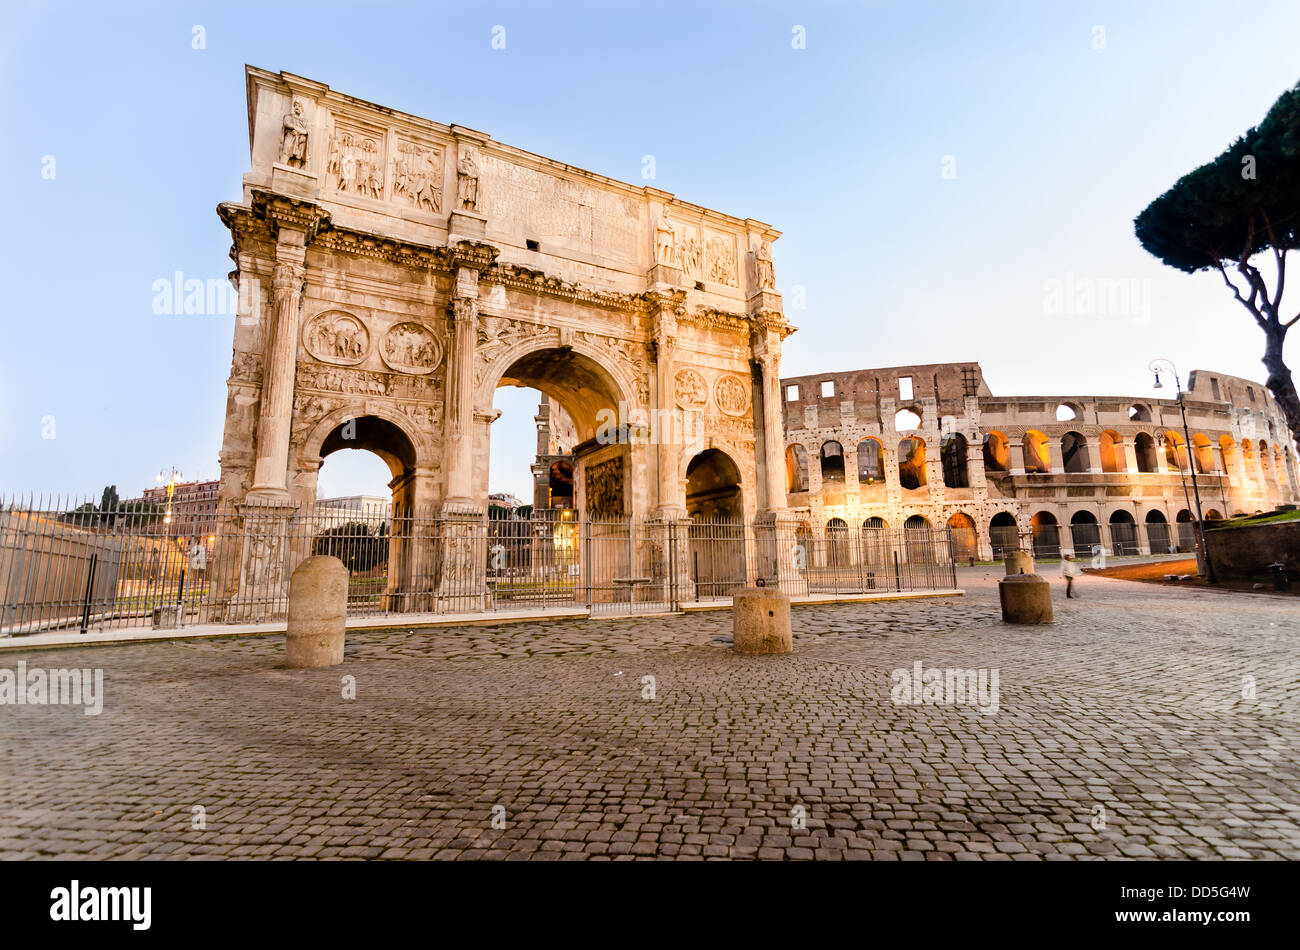 Arco di Costantino. (Constantin's Arc) Roma (Rome) Italy Stock Photo